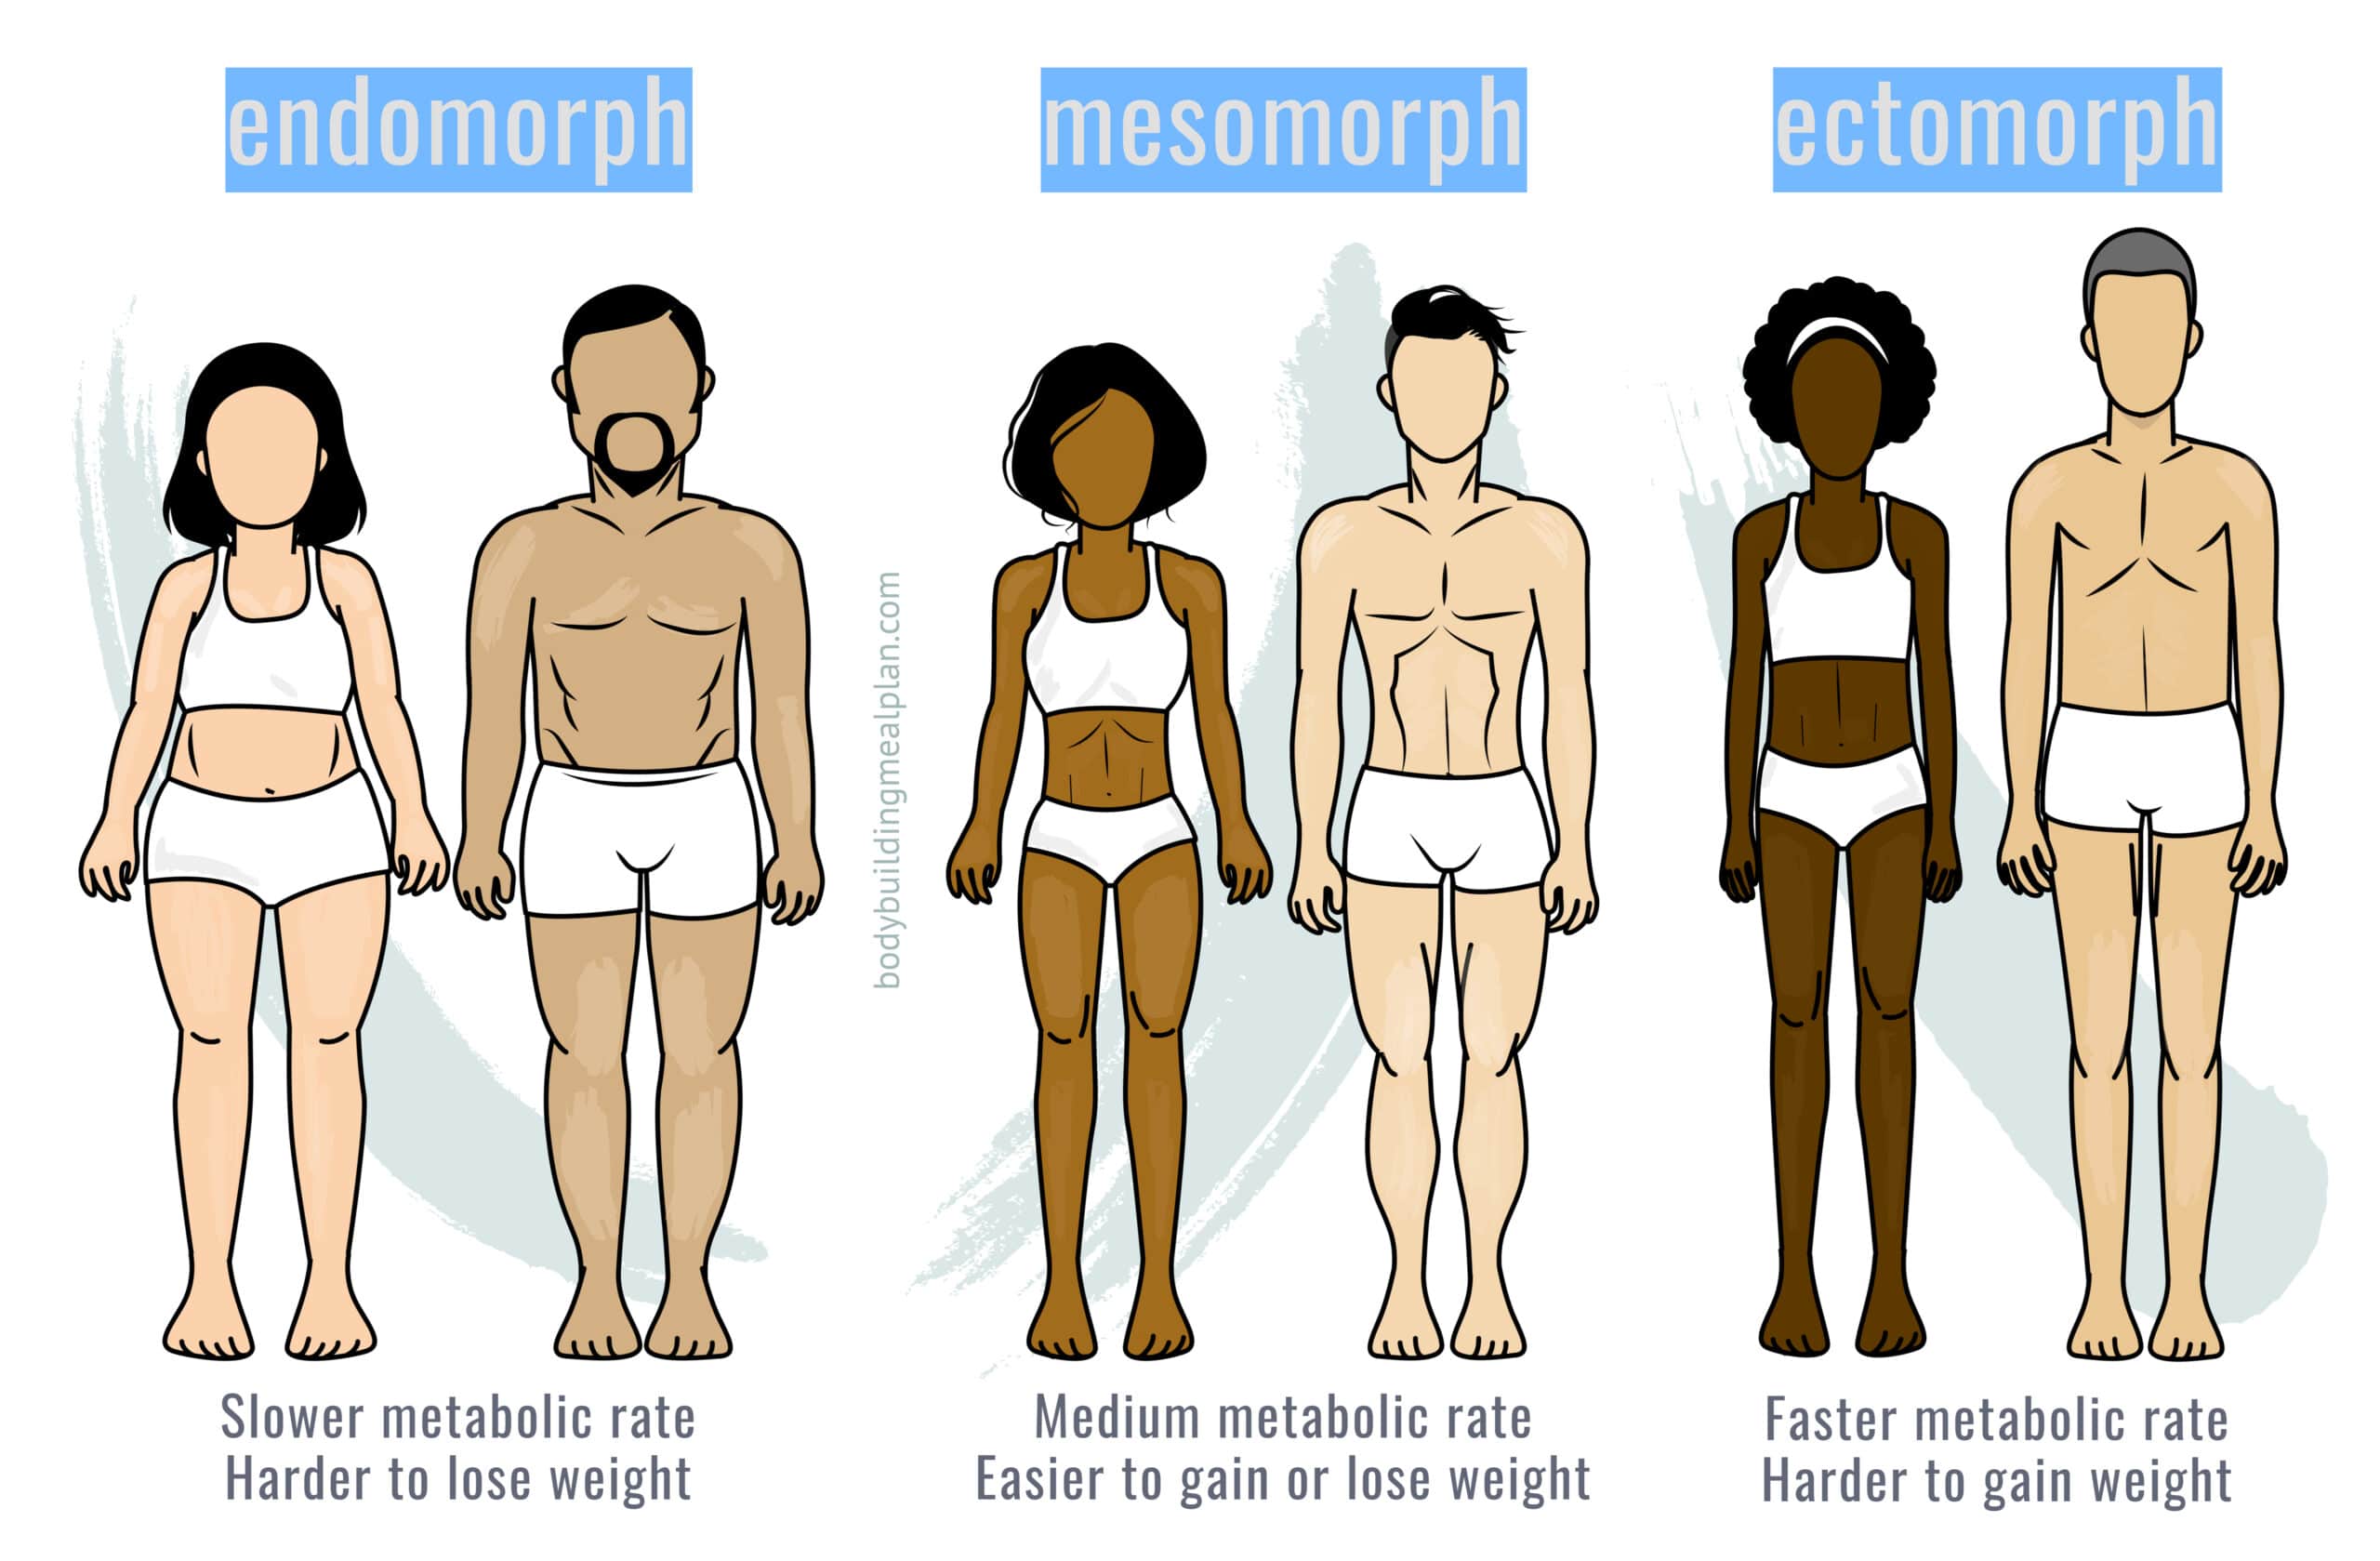 mesomorph body type diet